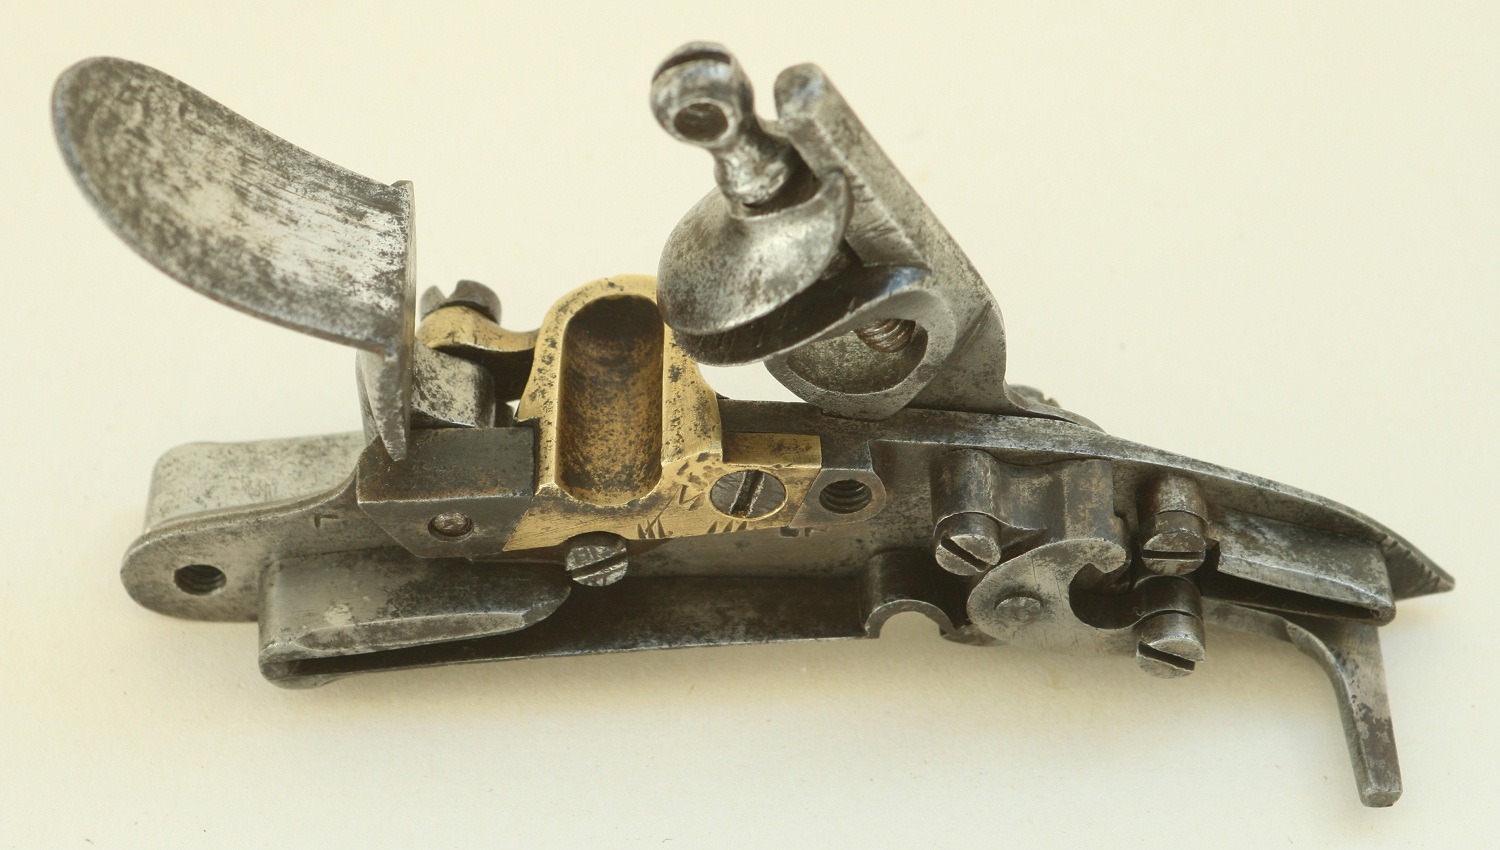 French flintlock for pistol model An IX